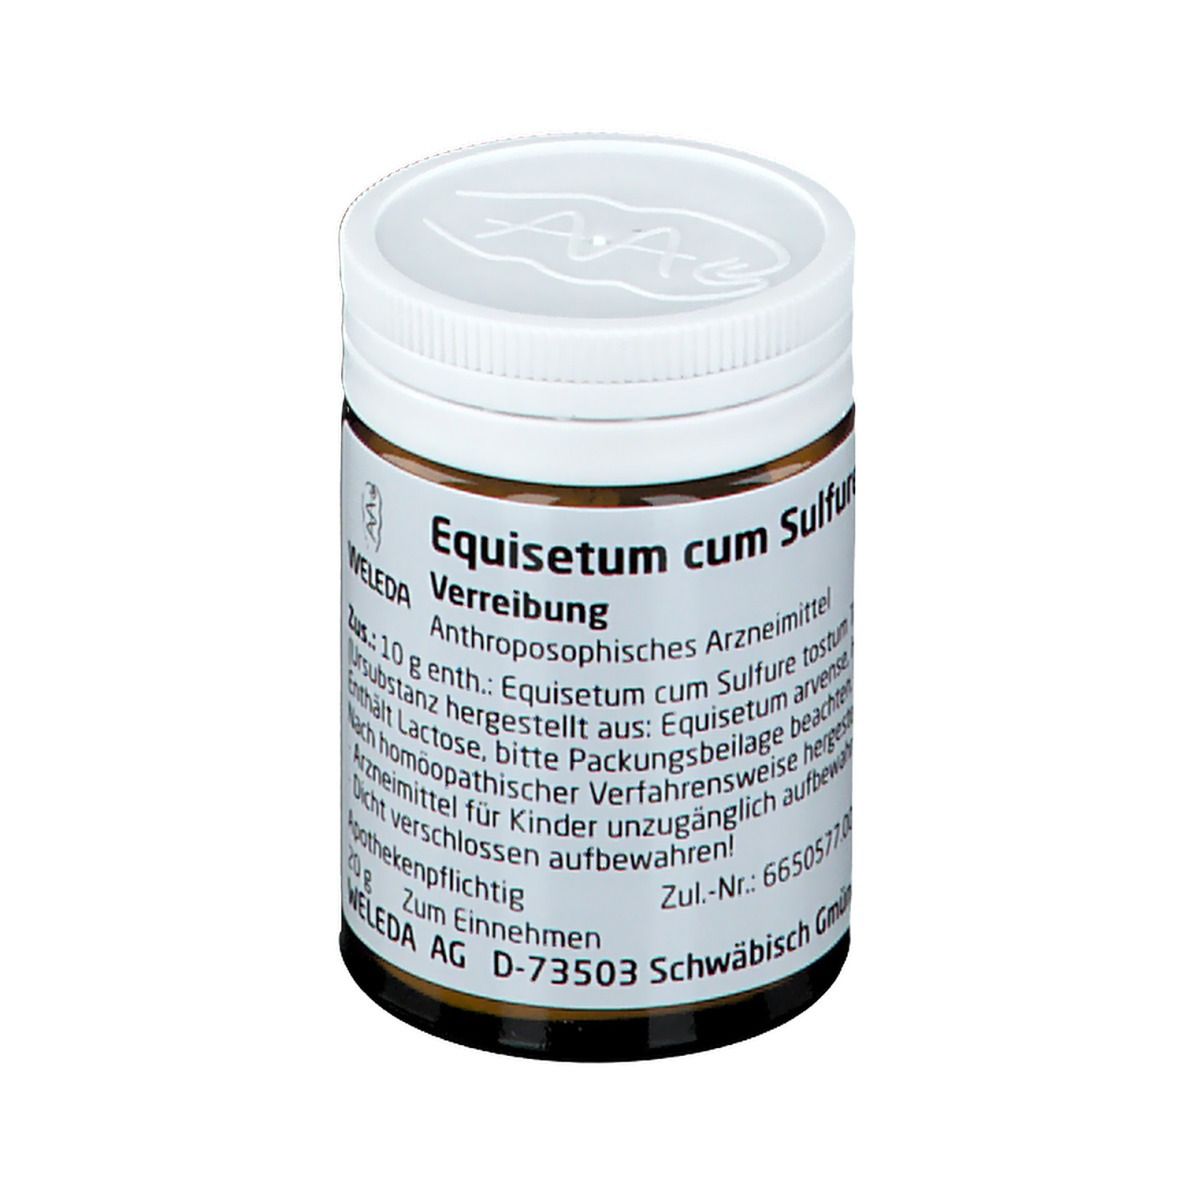 Equisetum Cum Sulfure Tostum D3